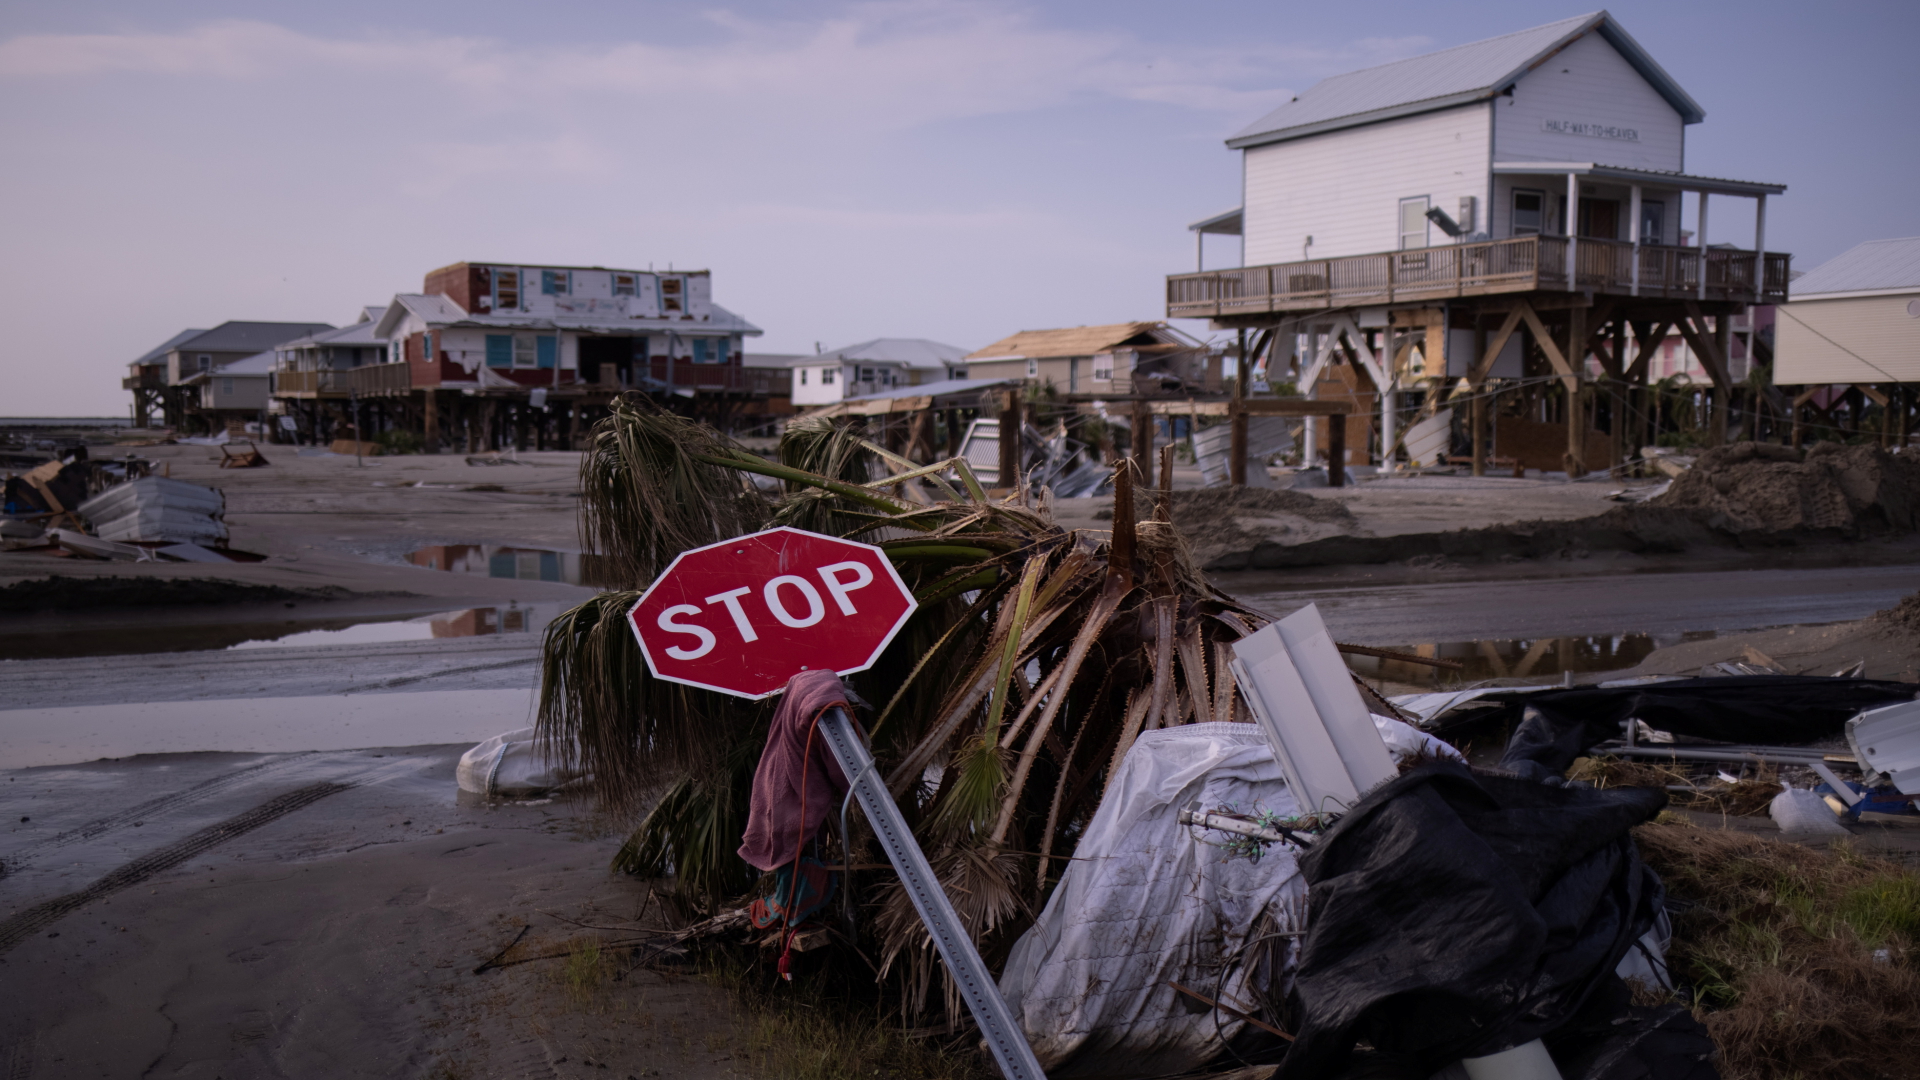 Ein umgeknicktes Stoppschild liegt in einer verwüsteten Gegend | REUTERS